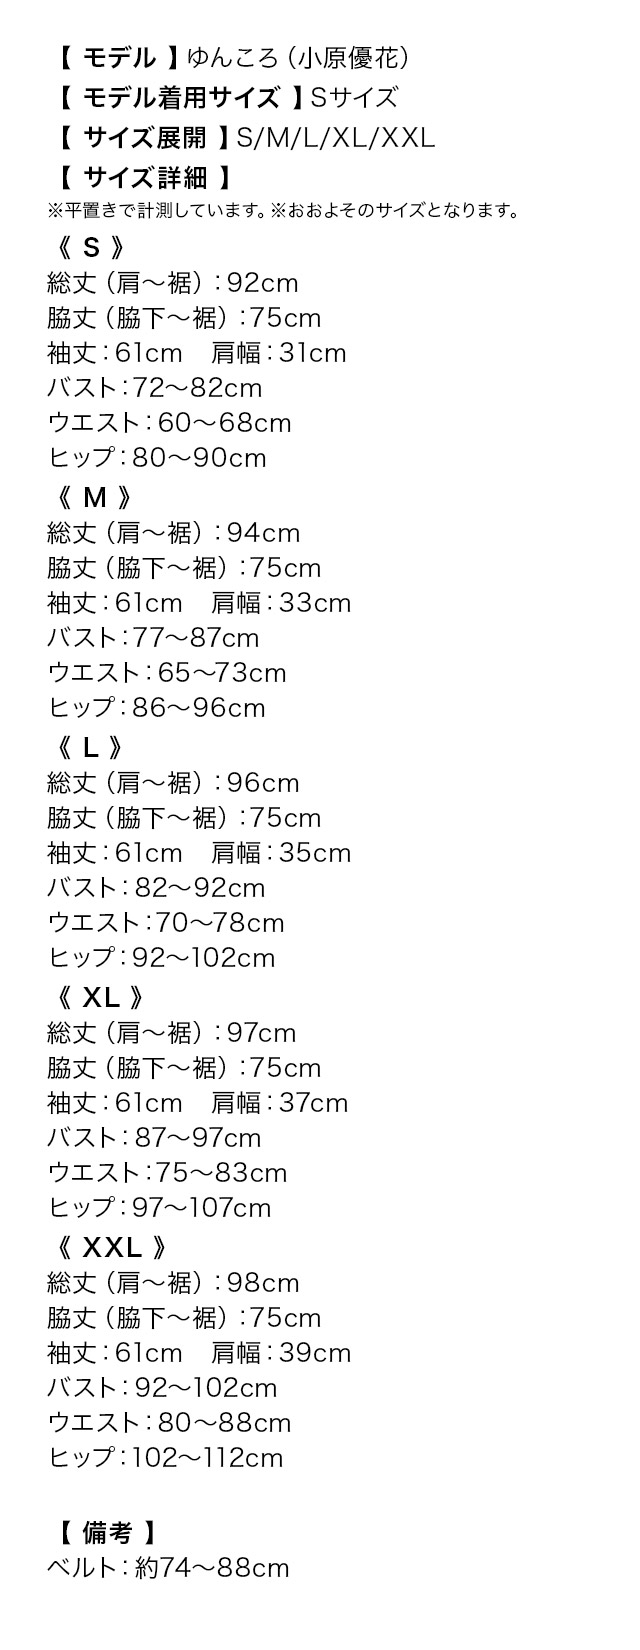 長袖レースハートカットペプラムマーメイドタイトミニドレスのサイズ表